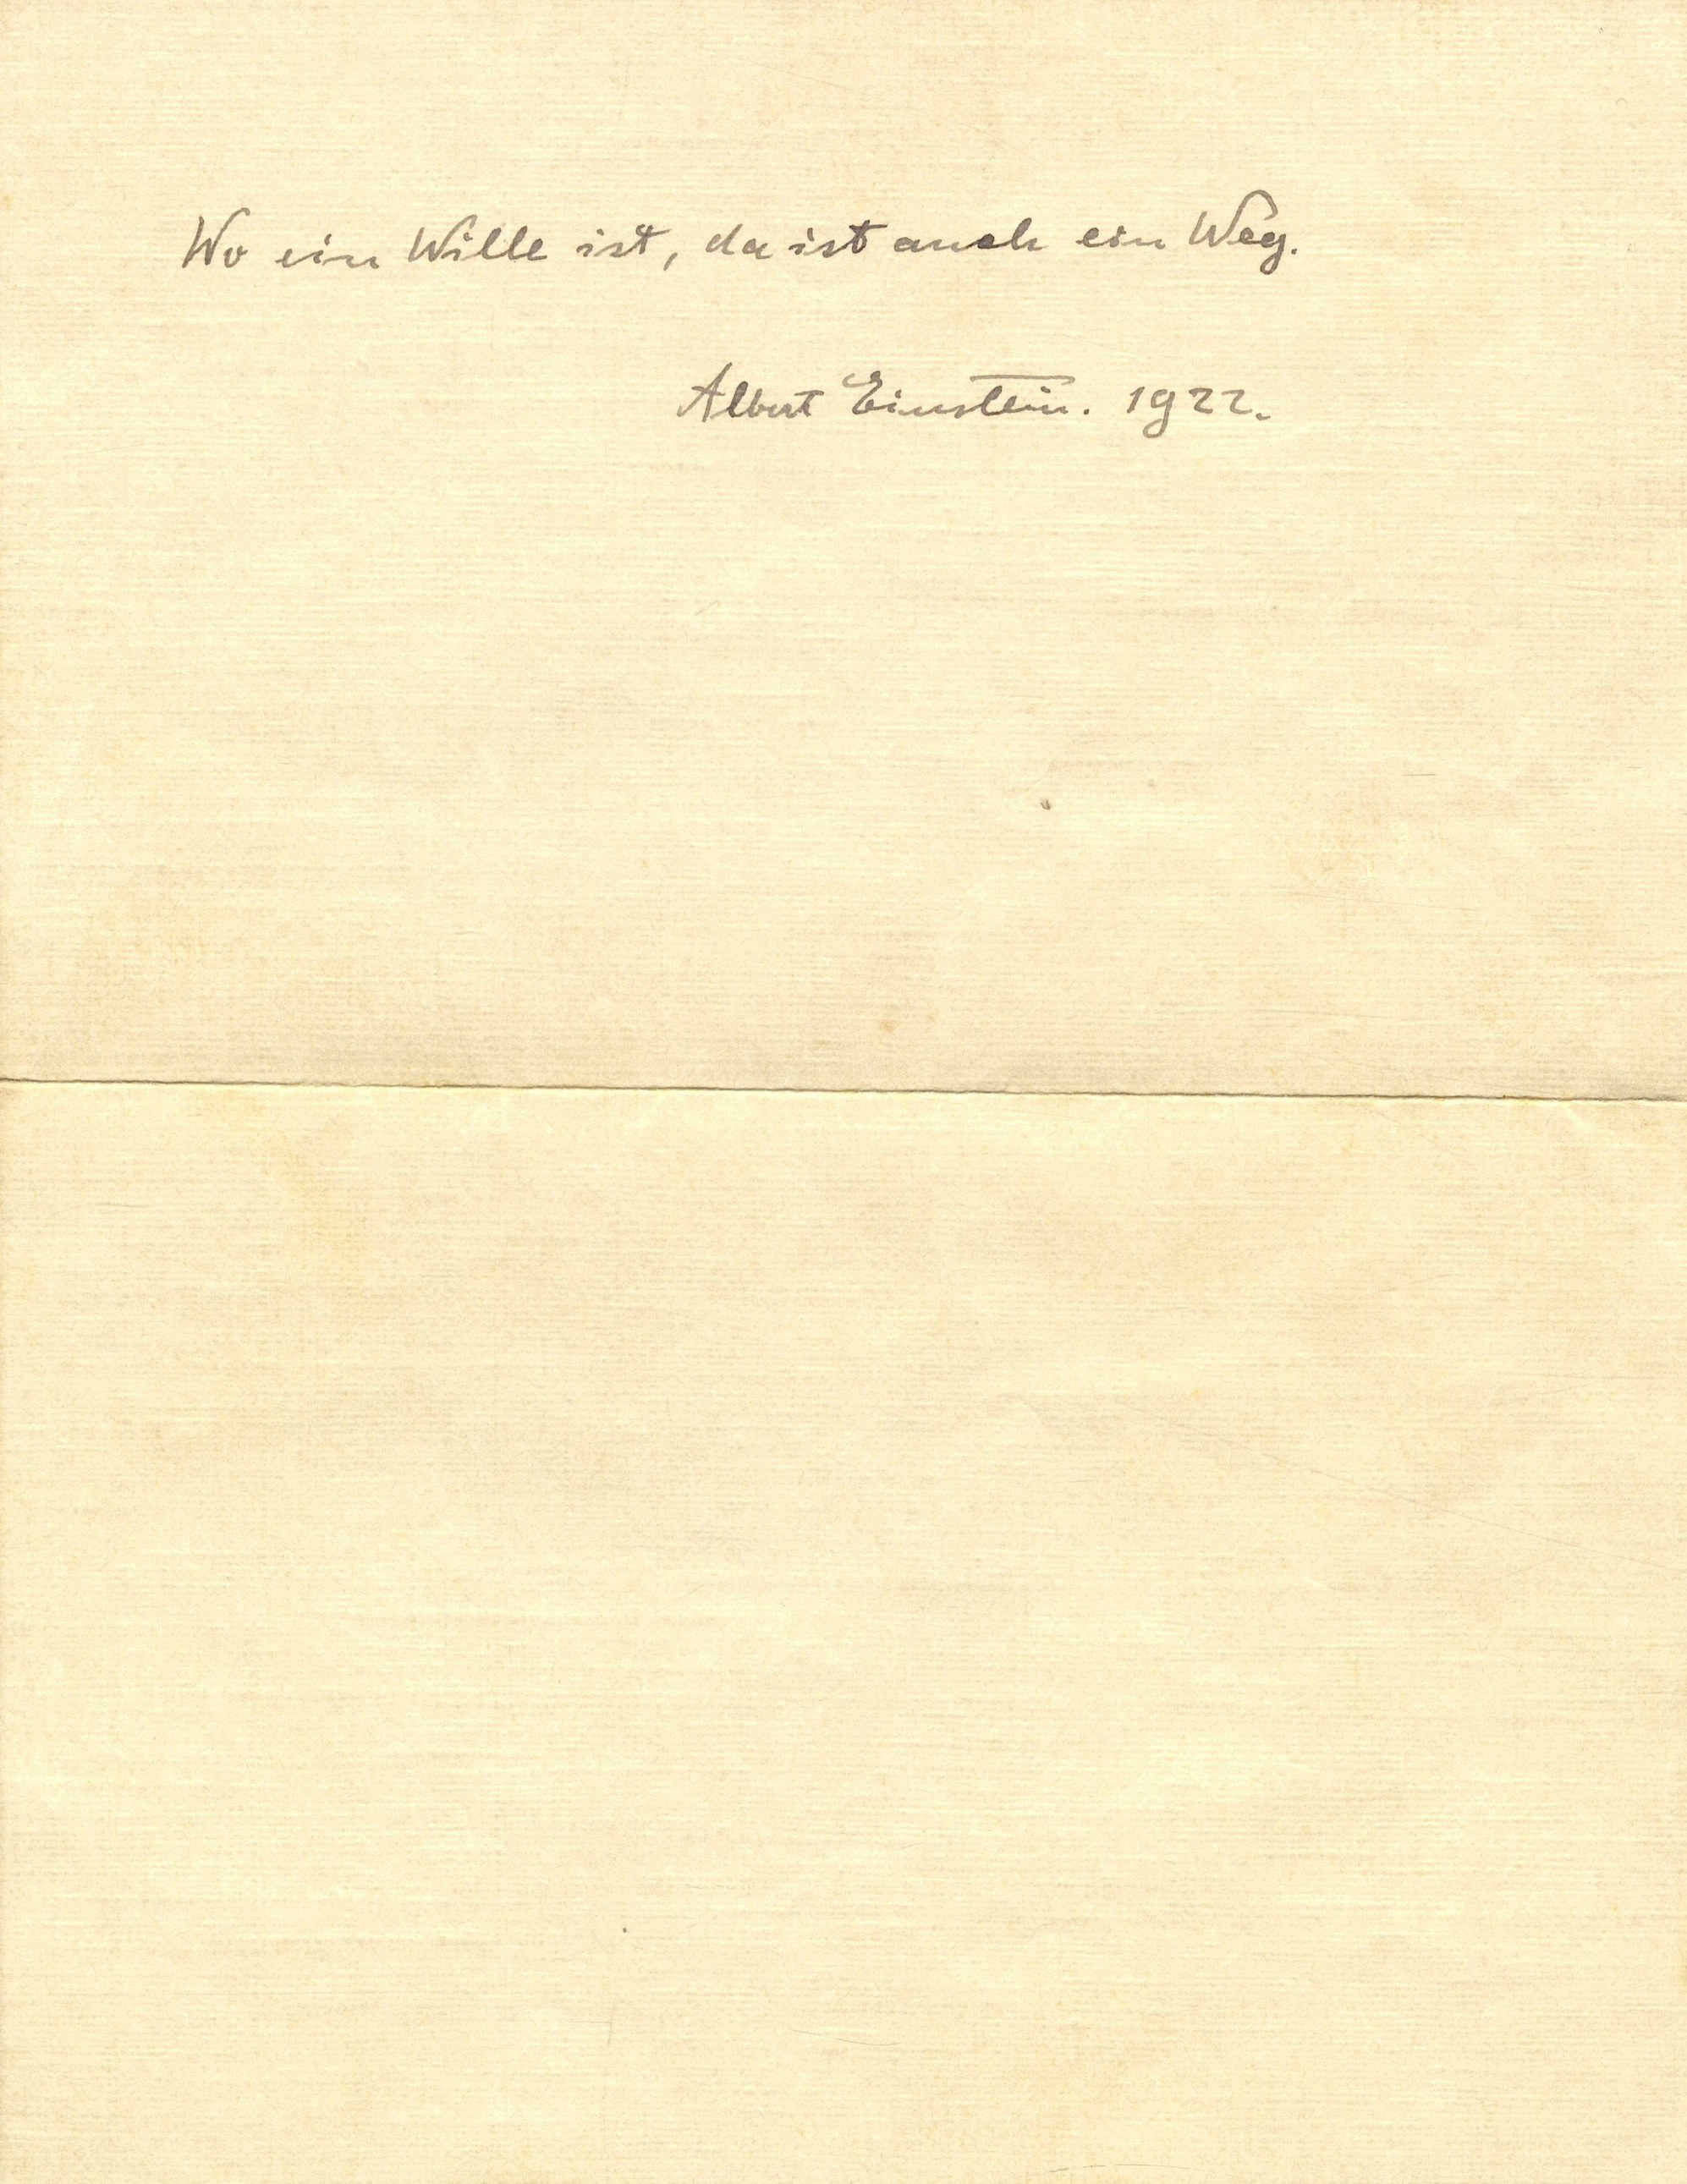 albert einstein letter auction japan tokyo 1922